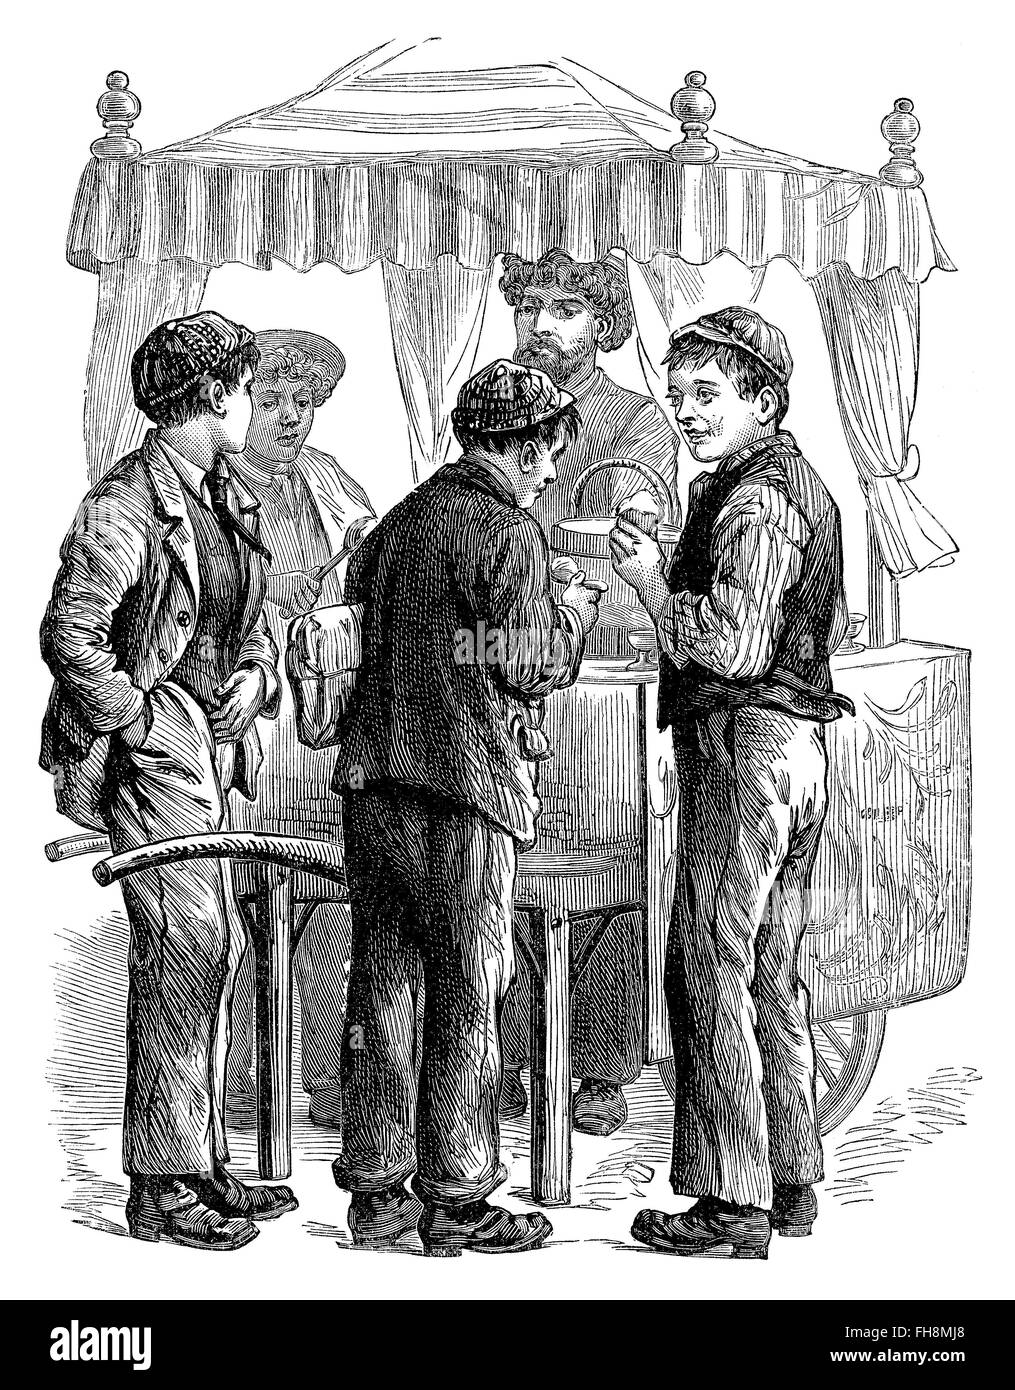 Schwarz / weiß-Gravur der viktorianischen oder edwardianischen jungen an einem Eis-stand. Stockfoto